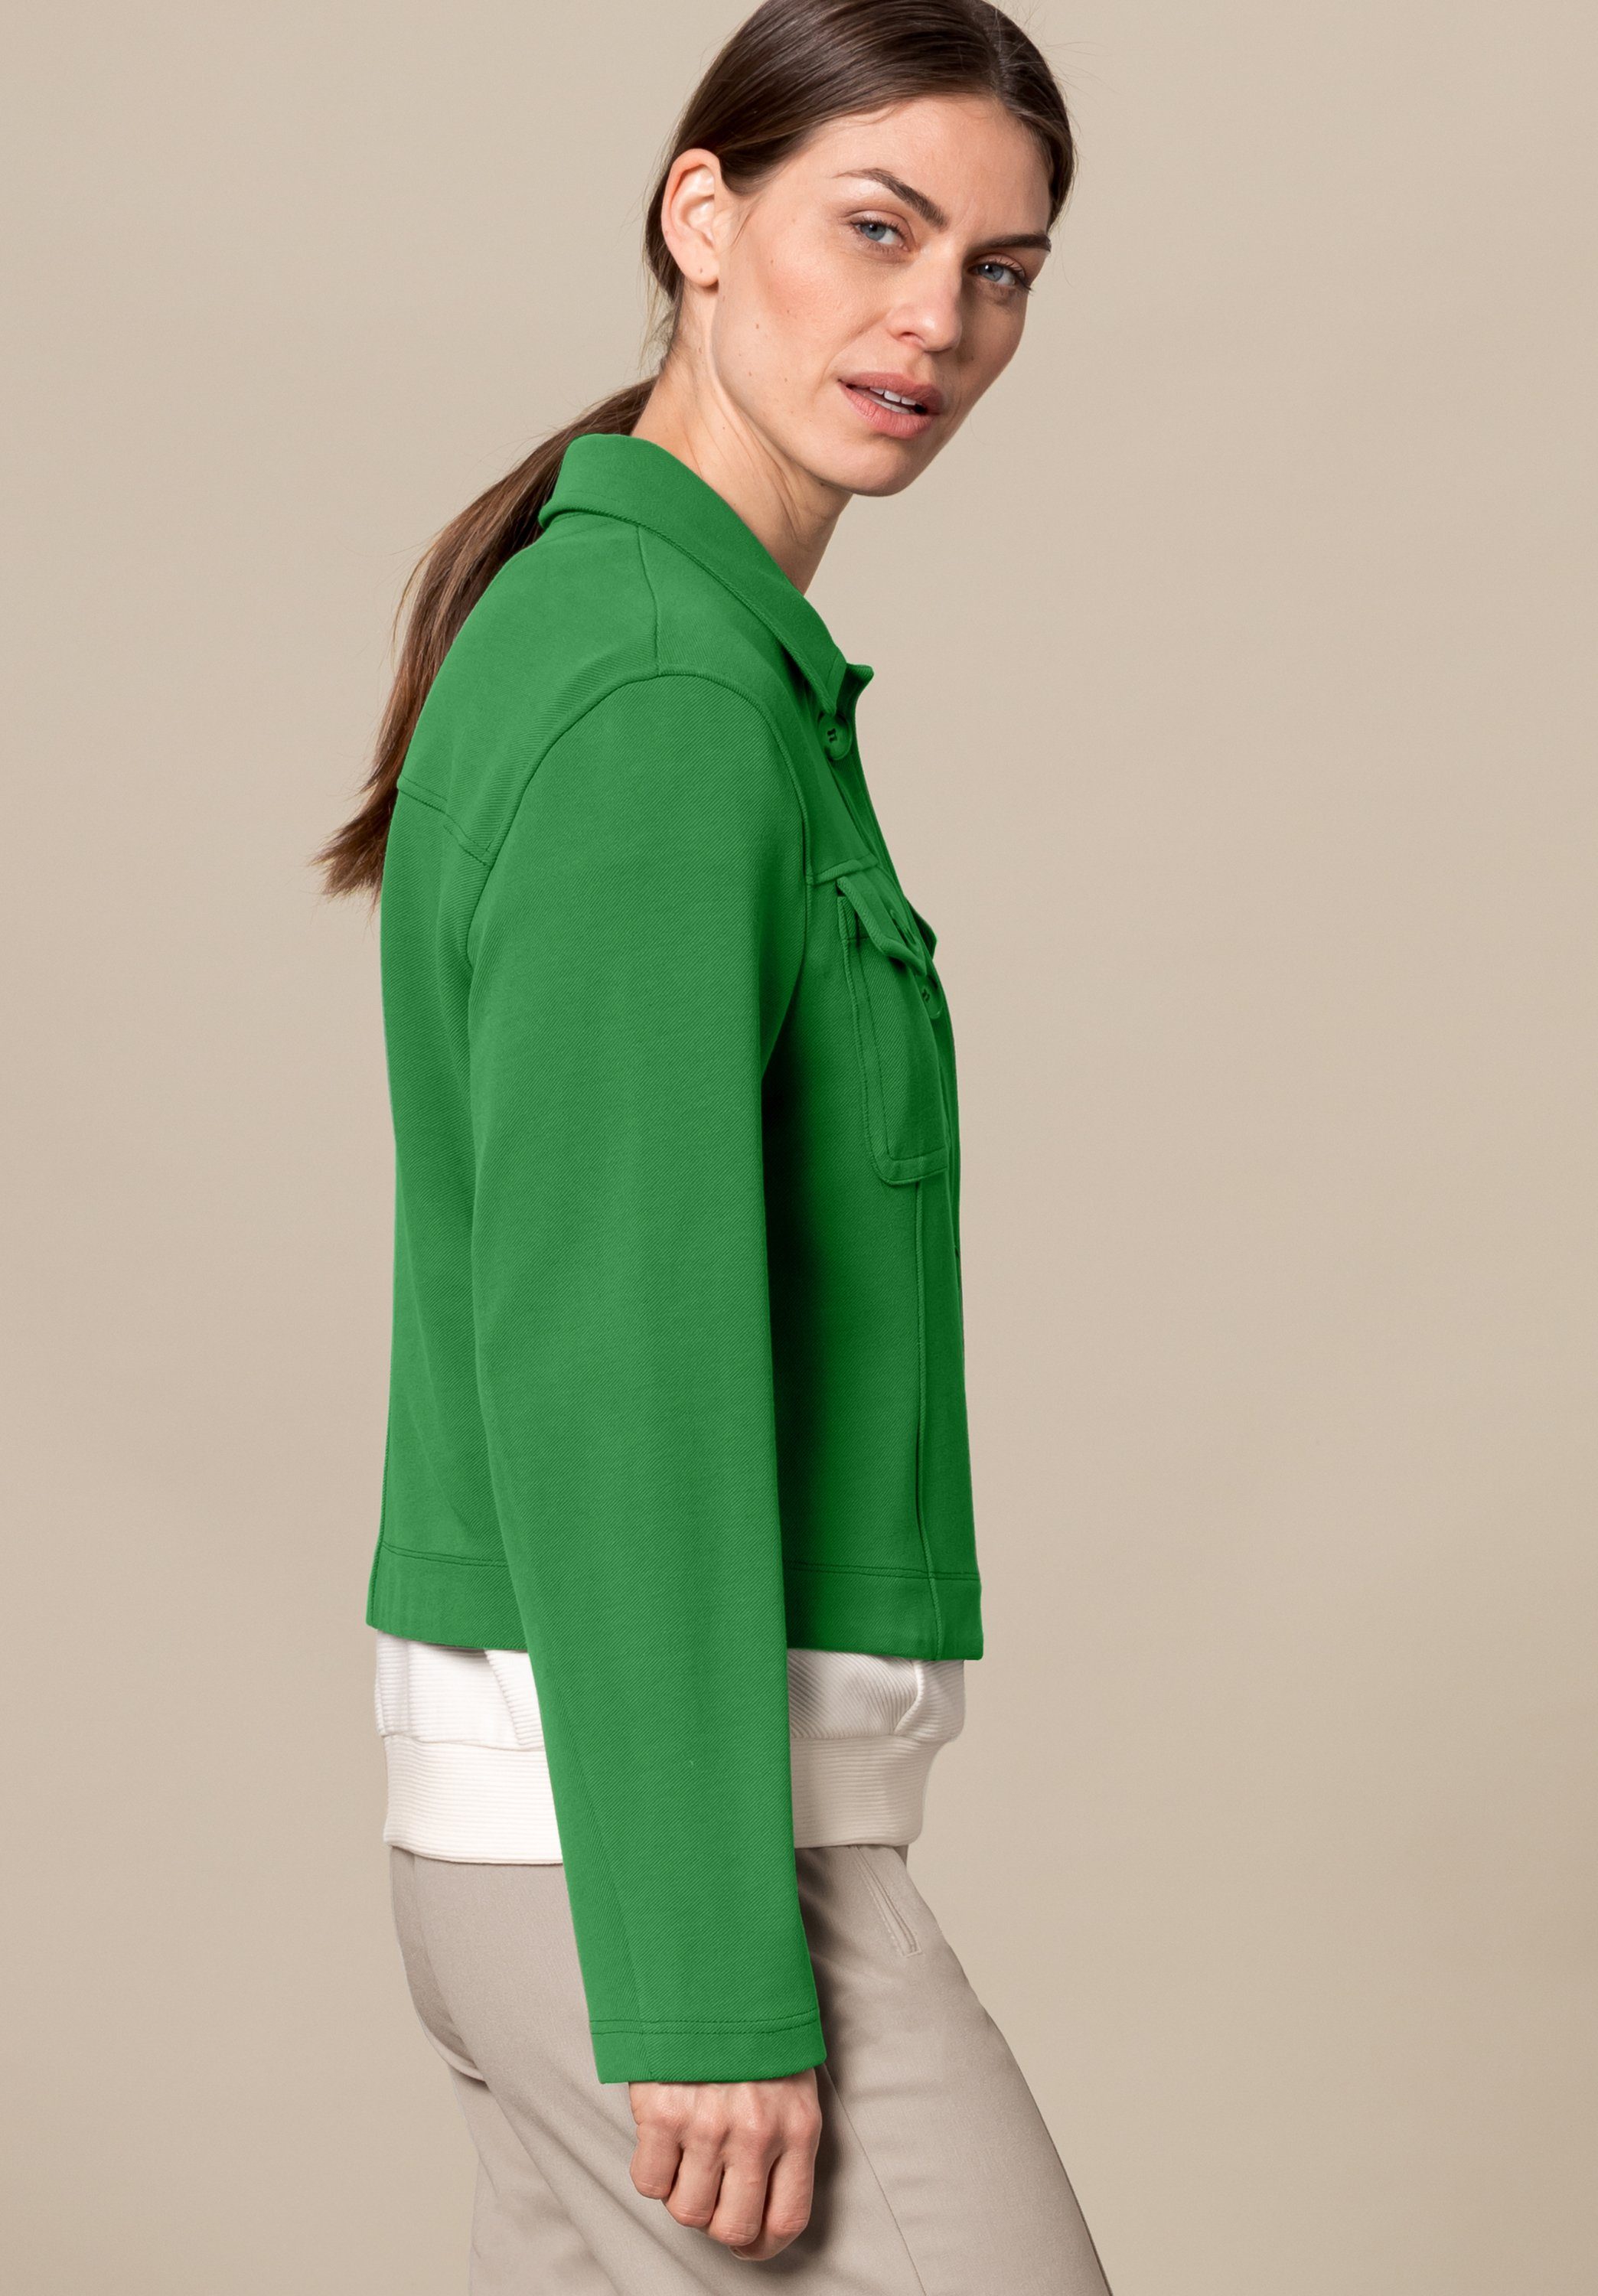 MIRANDA dark in Details bianca stylischen Trendfarbe greenery mit Kurzjacke angesagter